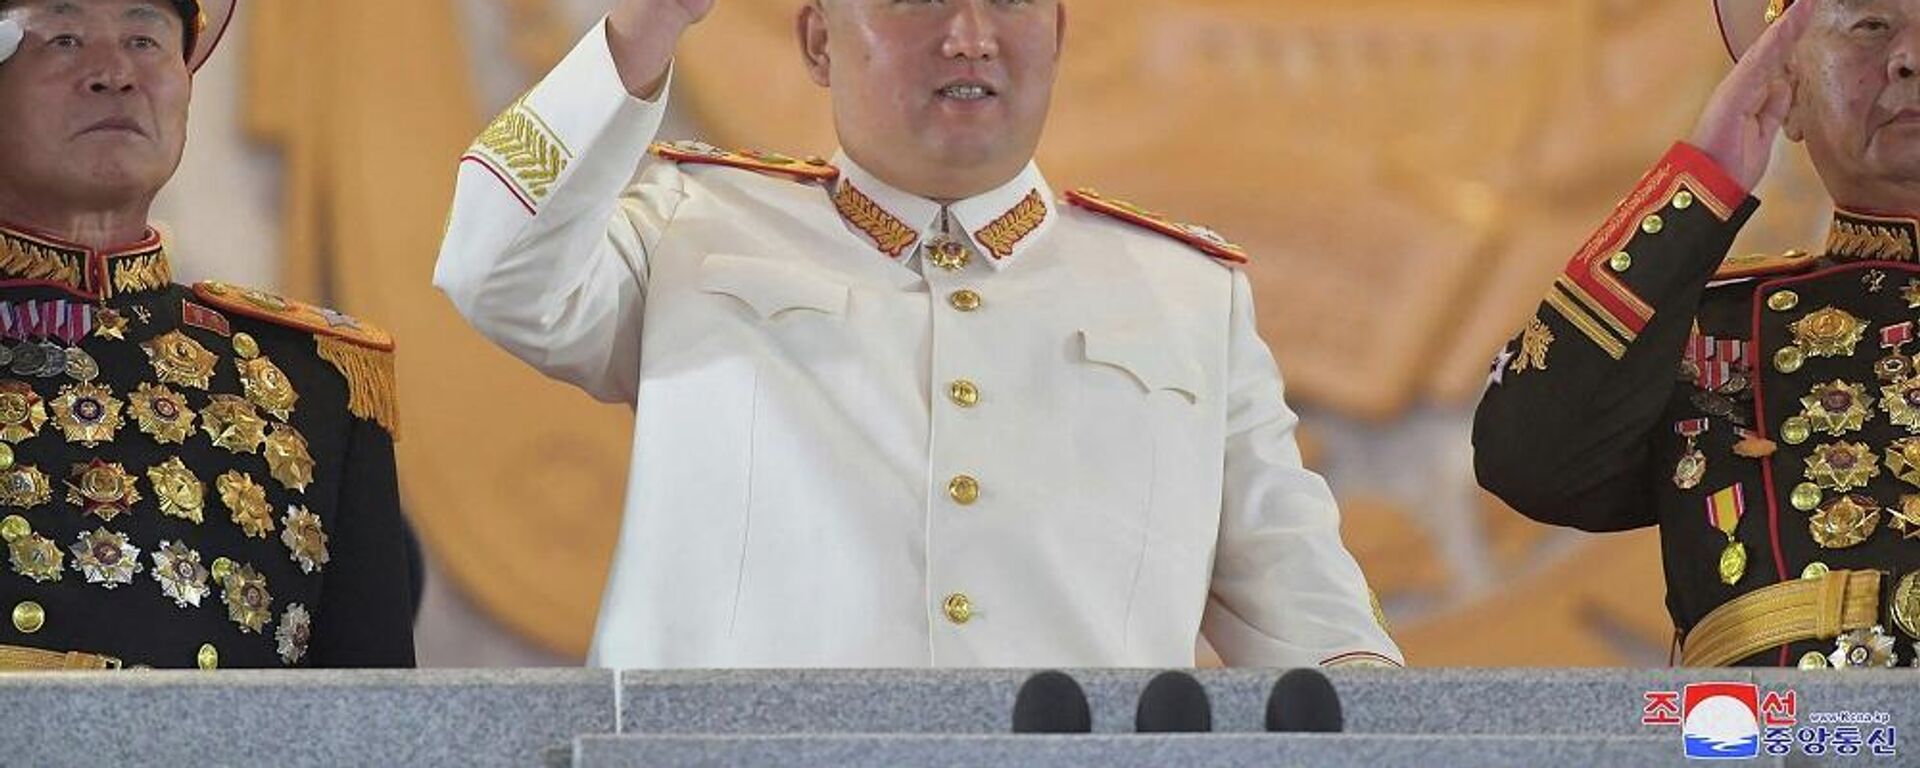 زعيم كوريا الشمالية، كيم جونغ أون، يشارك في عرض عسكري كبير أقيم في ساحة كيم إيل سونغ في بيونغ يانغ، 26 نيسان/ أبريل 2022 - سبوتنيك عربي, 1920, 13.06.2022